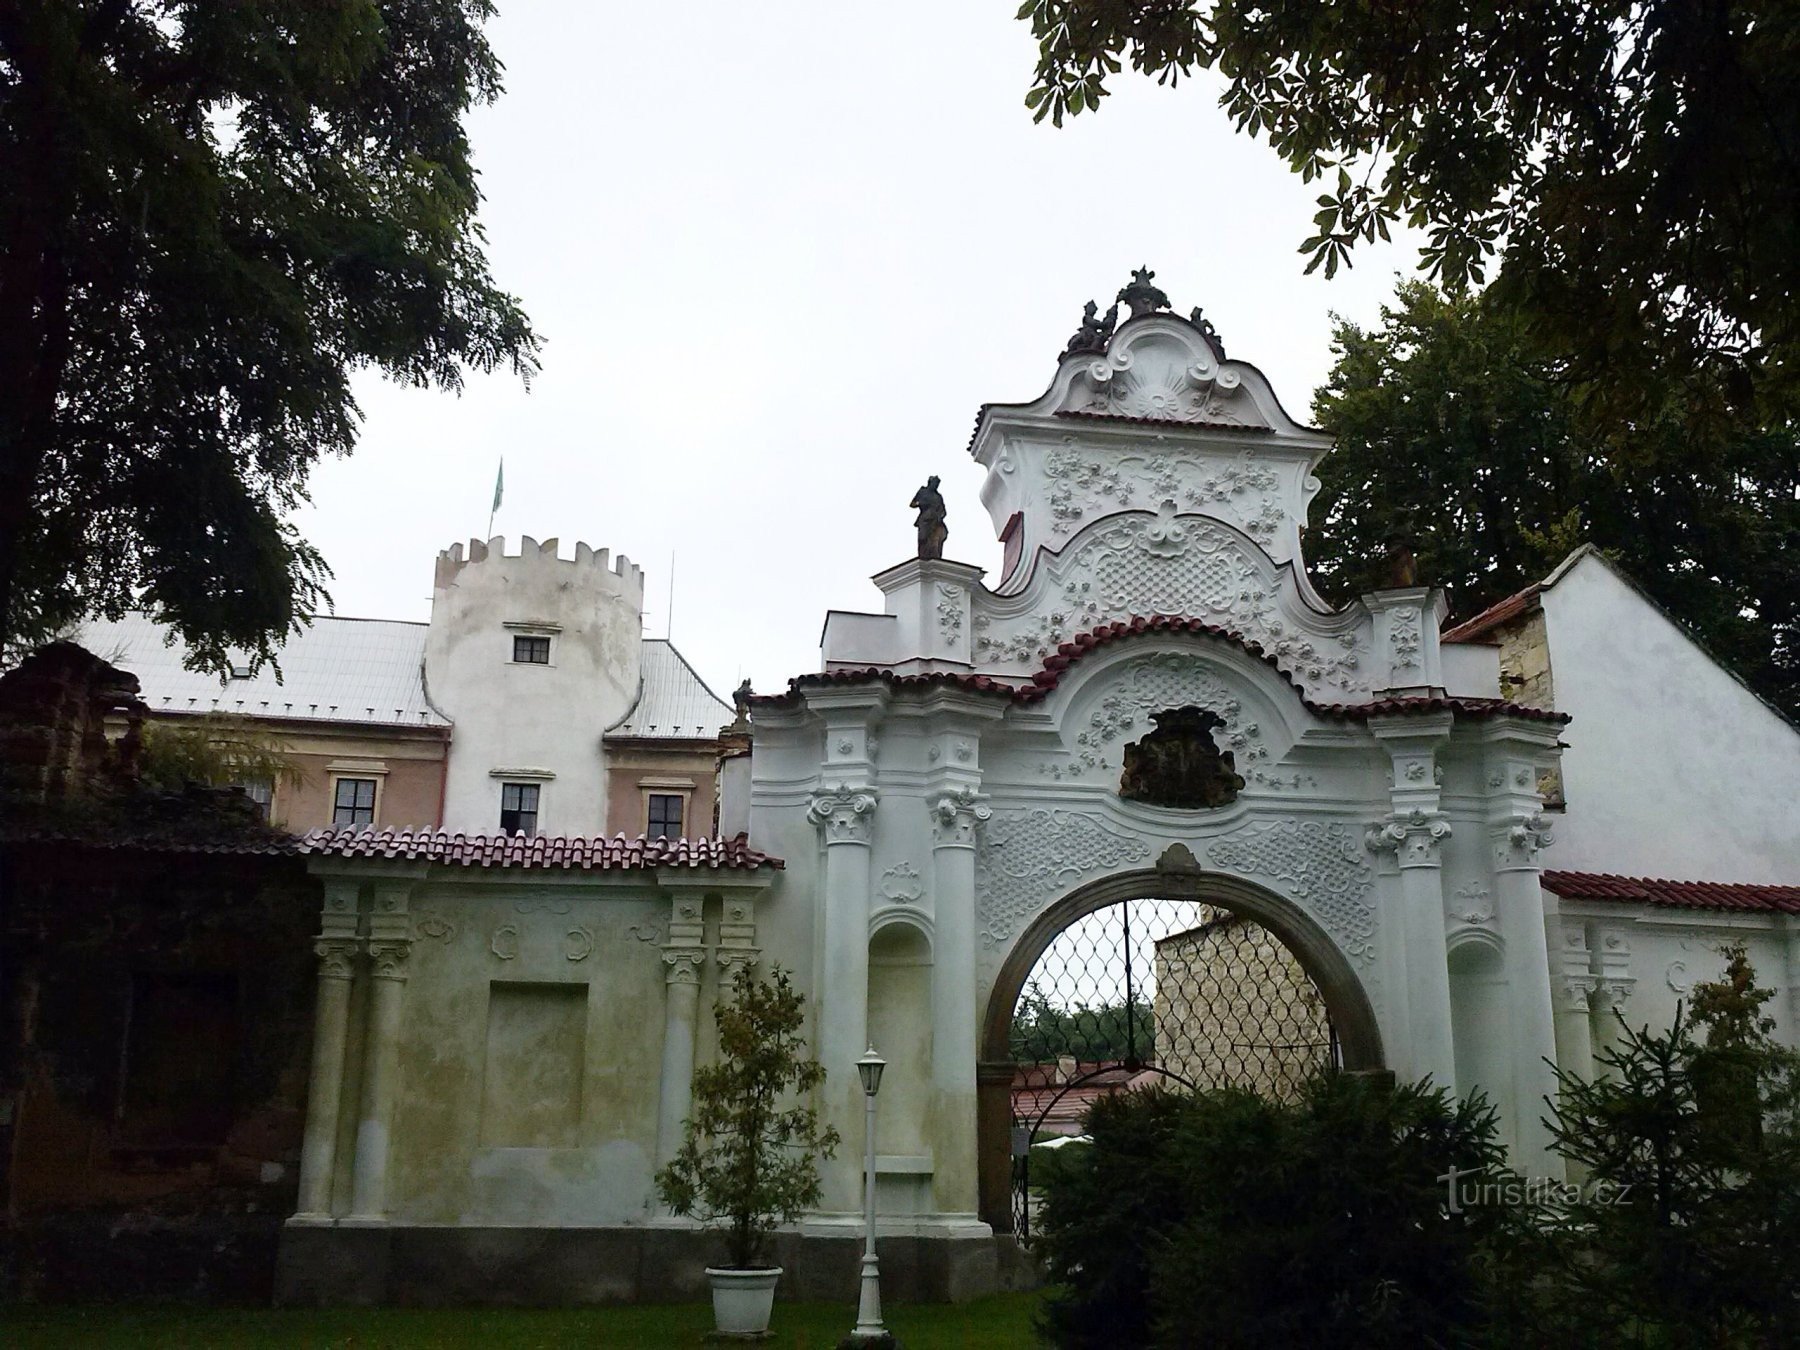 1. Puerta de entrada rococó del castillo.